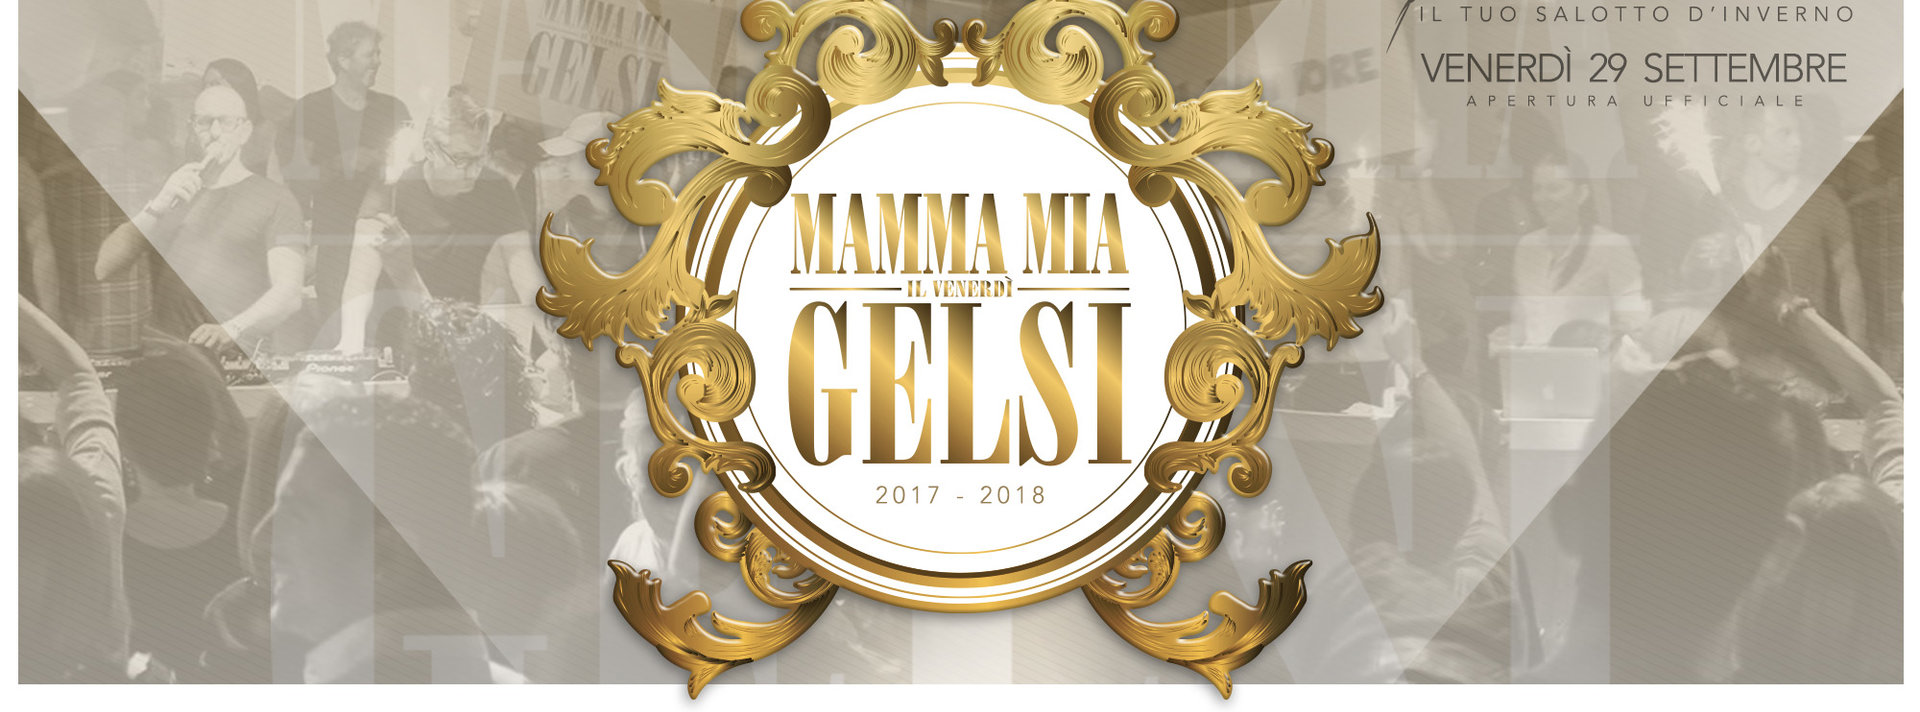 Mamma Mia opening - 29 settembre 2017